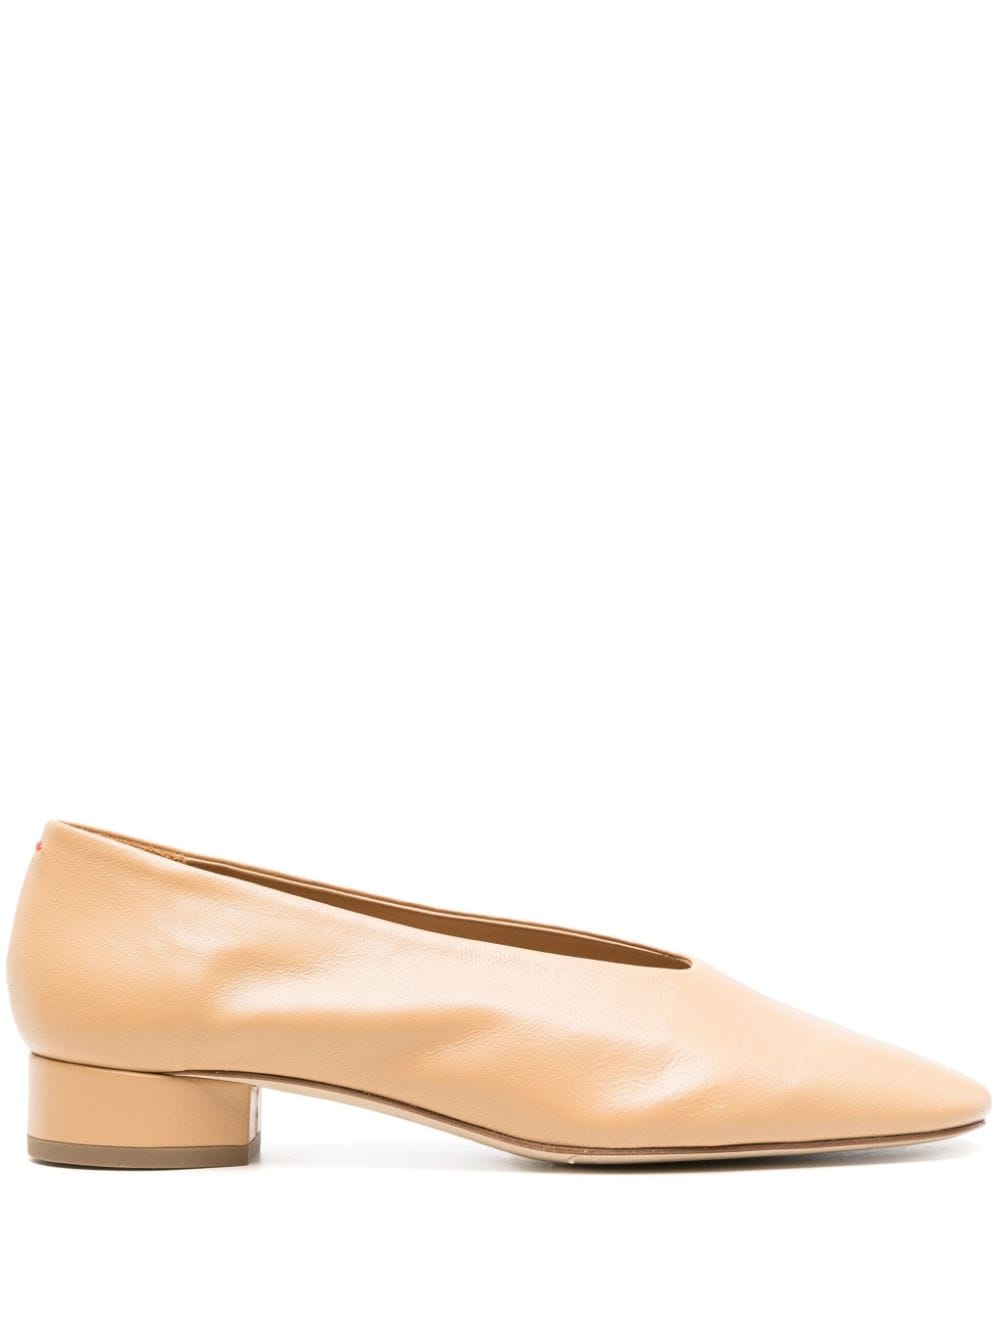 Aeyde Delia leather ballerina shoes - Neutrals von Aeyde